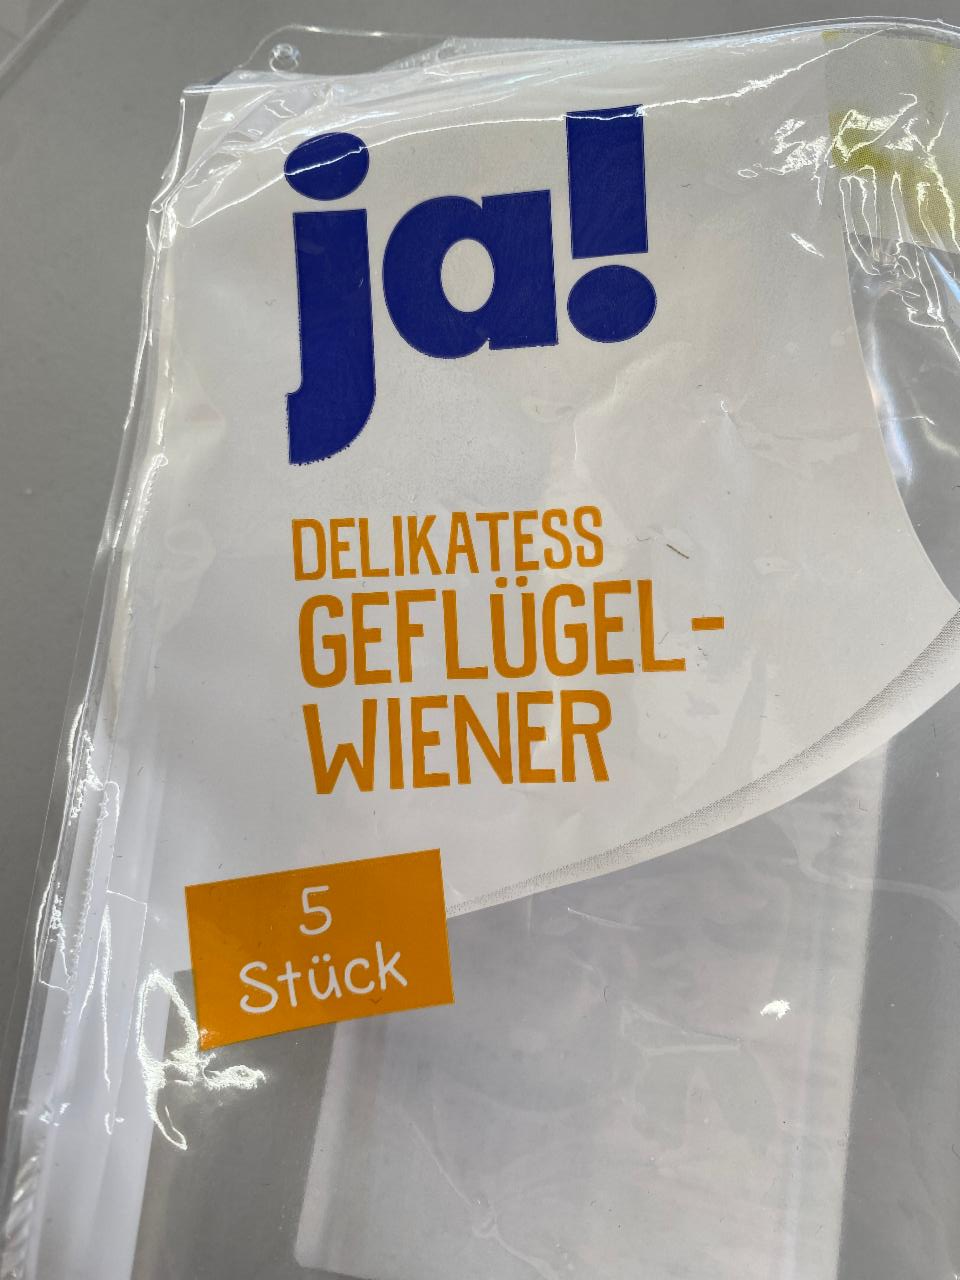 Fotografie - Delikatess Geflügel-Wiener ja!